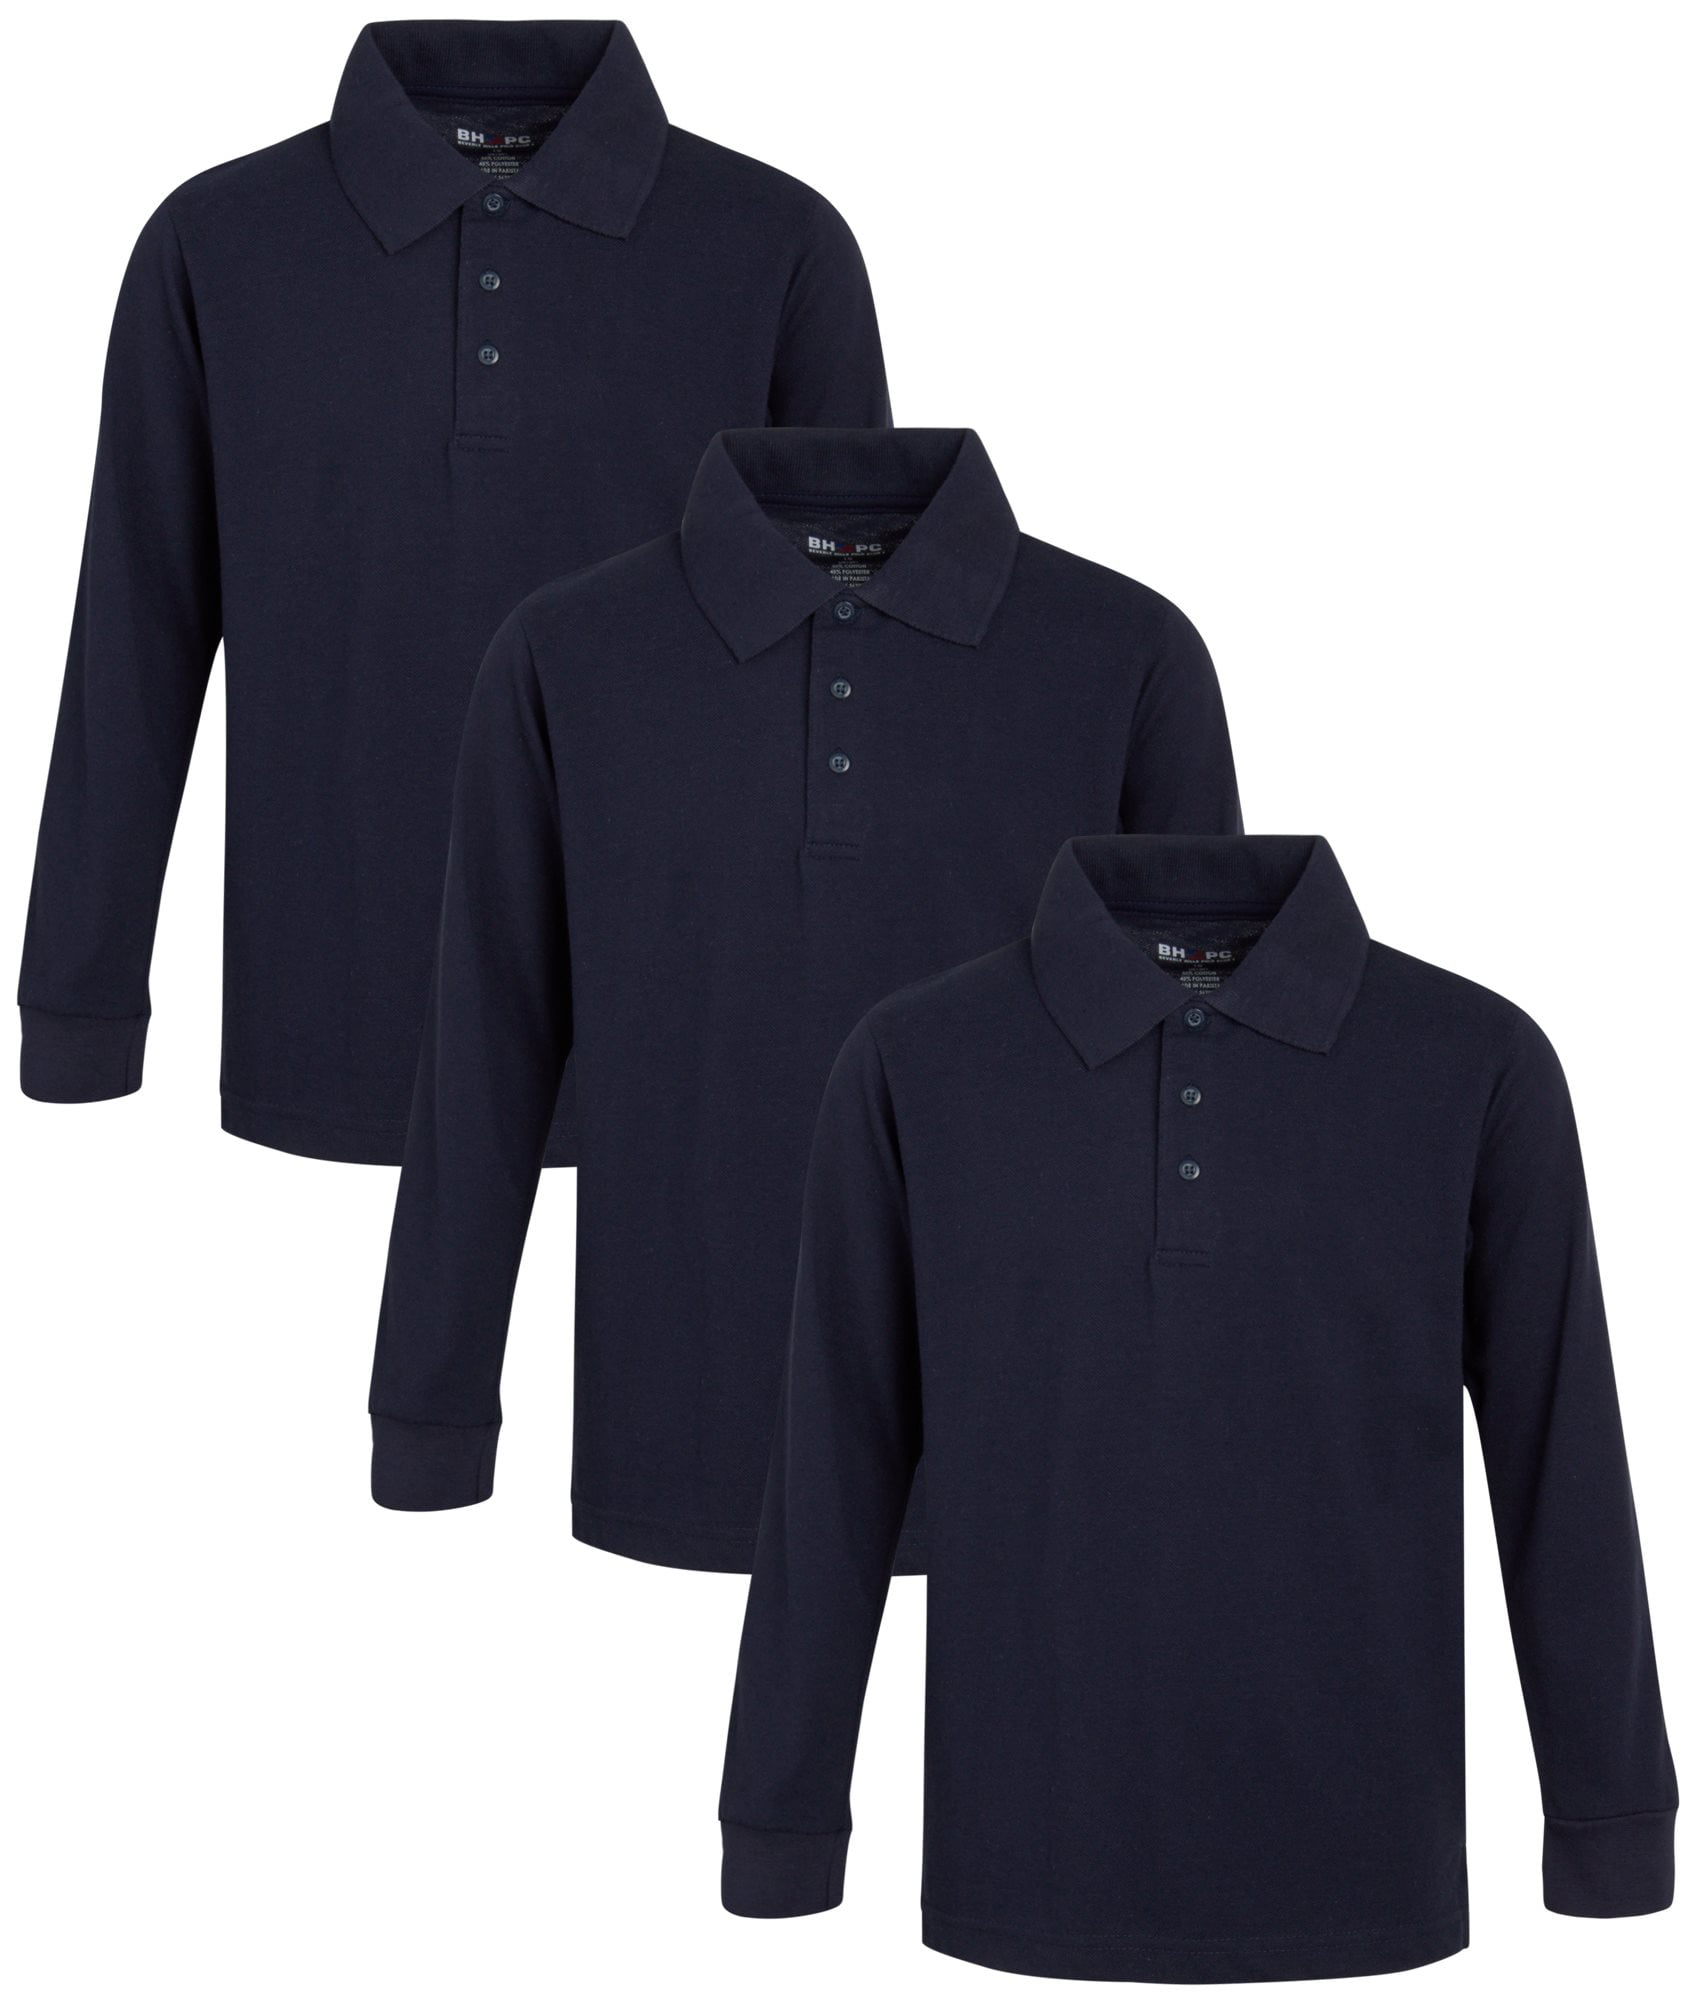 Beverly Hills Polo Club Boys School Uniform Shirt - Togo